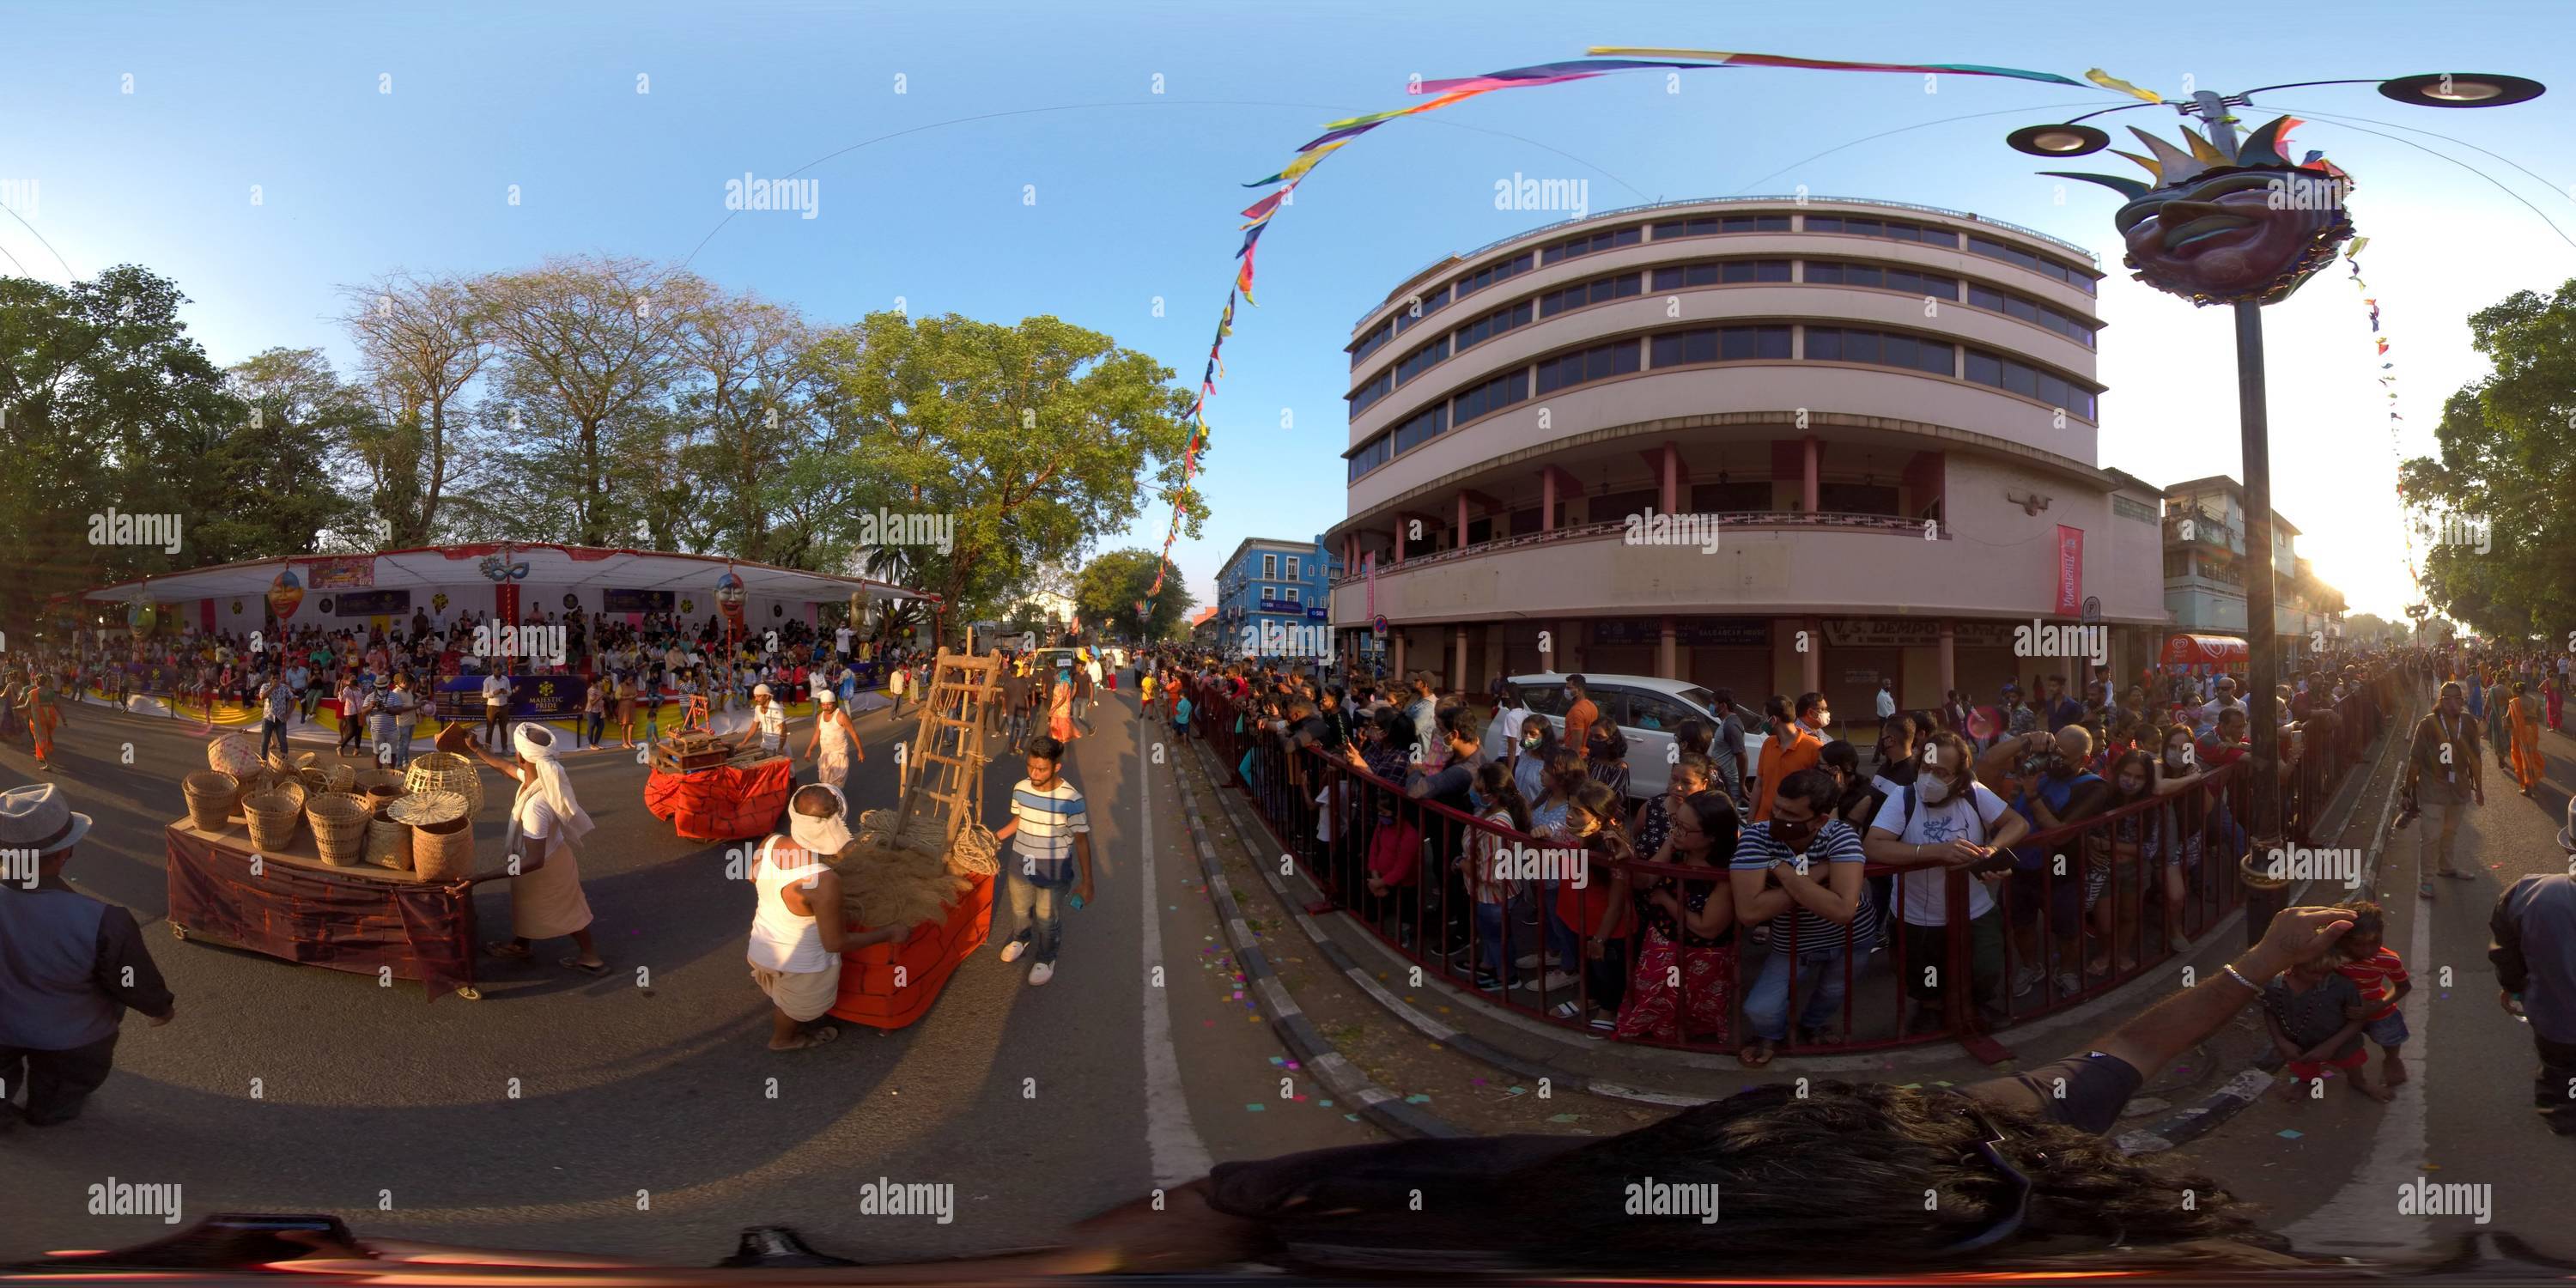 360° view of Viva Carnival 2021 Alamy